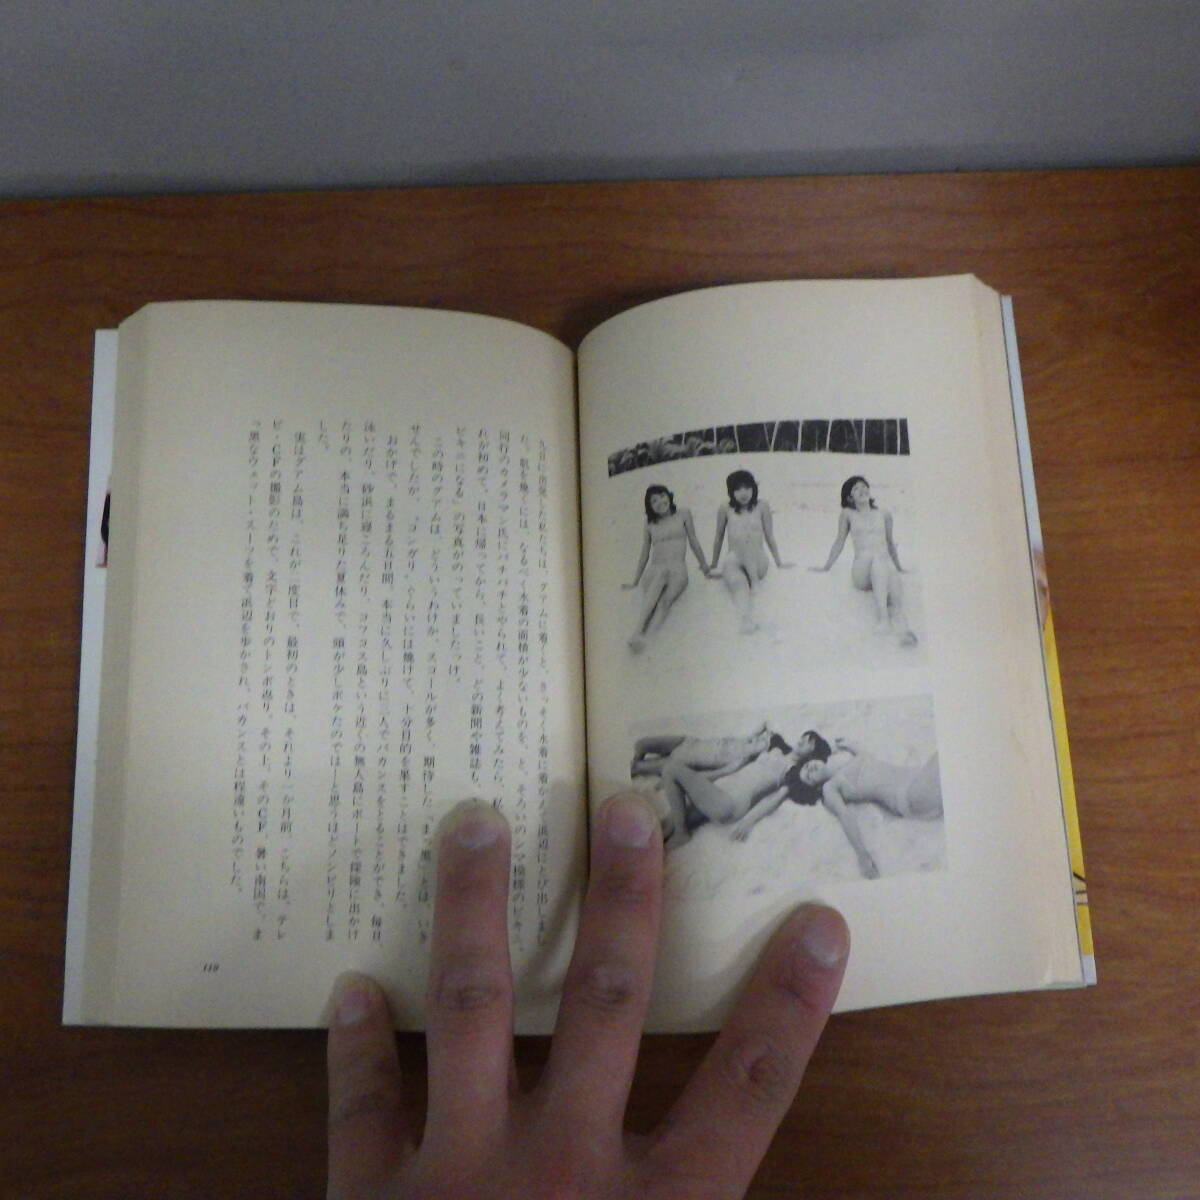 絶版 キャンディーズ 涙の引退記 さよならのメッセージ 昭和53年 勁文社 1978年 当時もの 初版の画像5